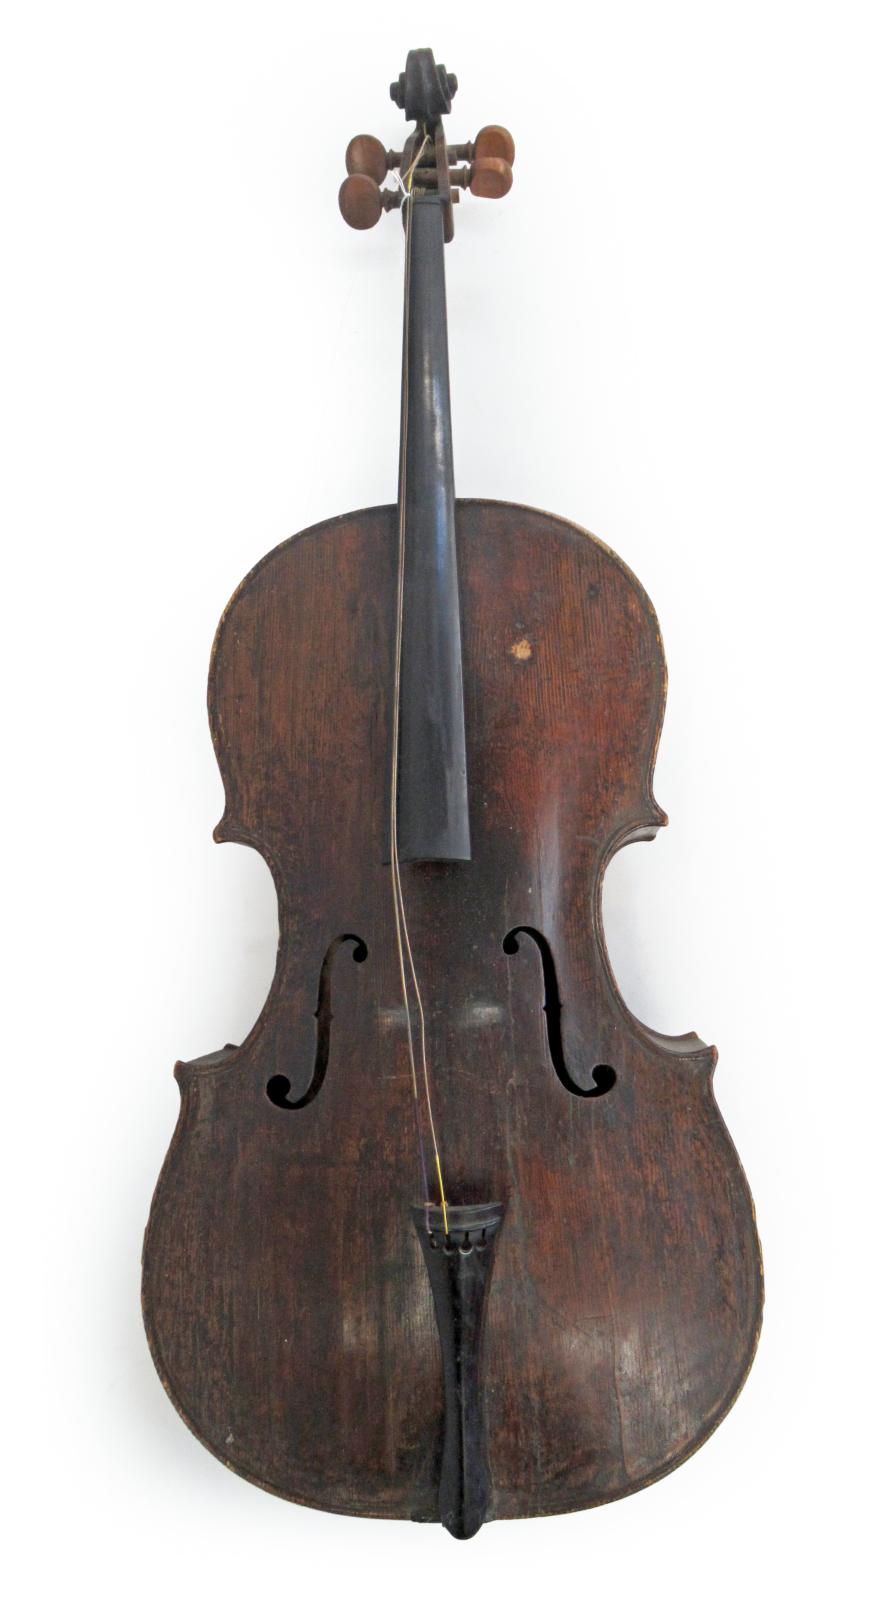 Concerto pour violoncelle baroque